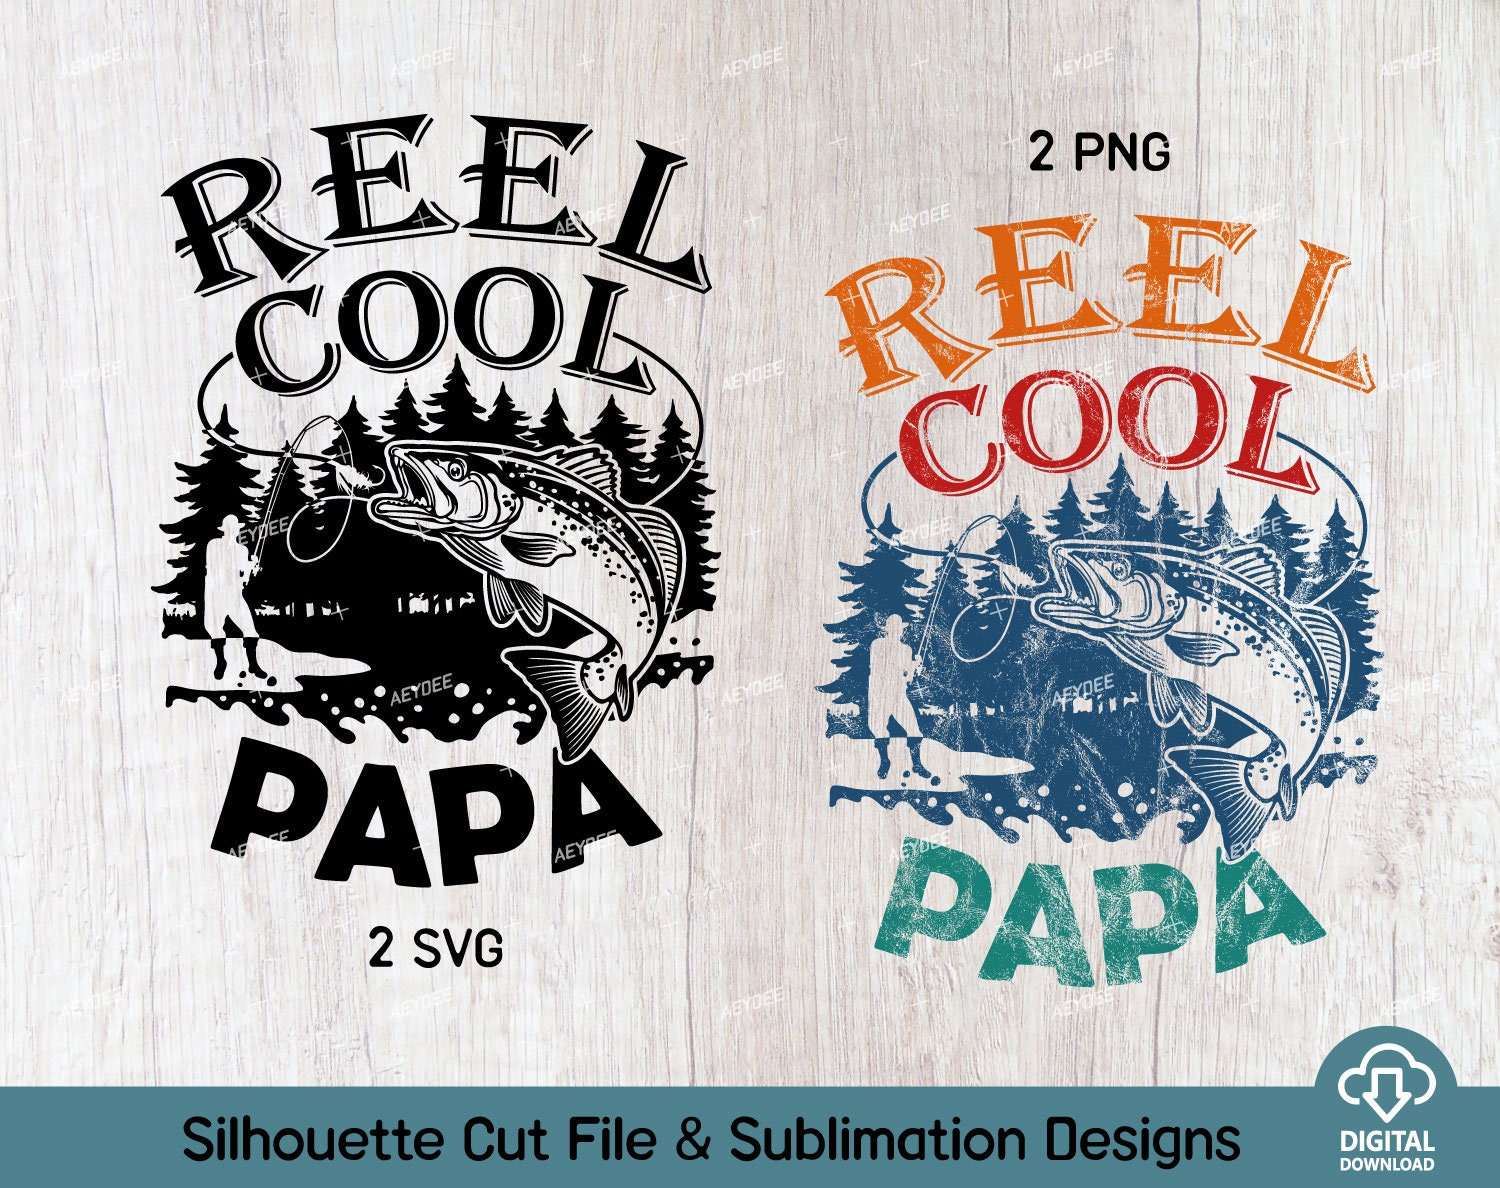 Reel Cool Papa Png and Svg Files, Papa Fishing Shirt Svg Png